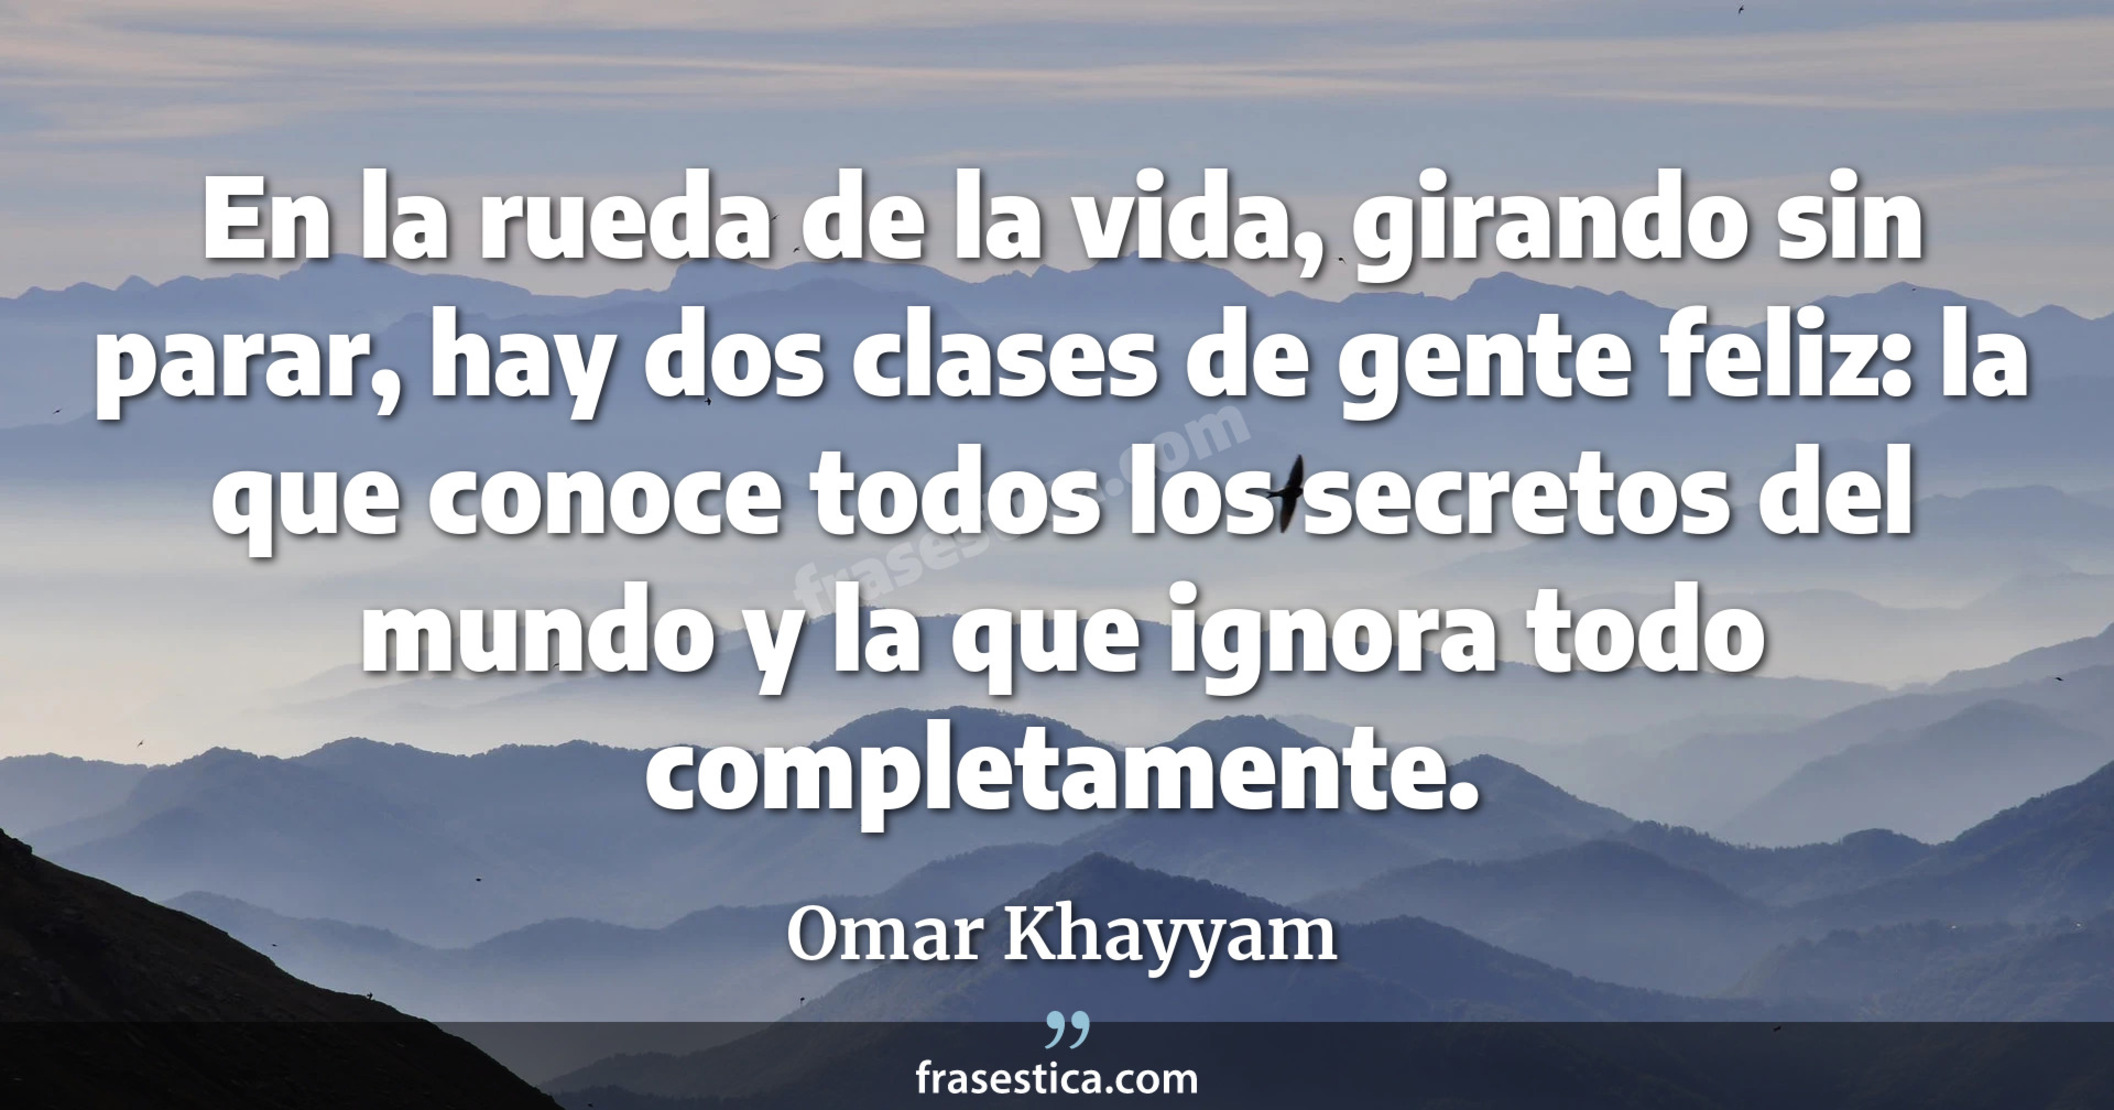 En la rueda de la vida, girando sin parar, hay dos clases de gente feliz: la que conoce todos los secretos del mundo y la que ignora todo completamente. - Omar Khayyam